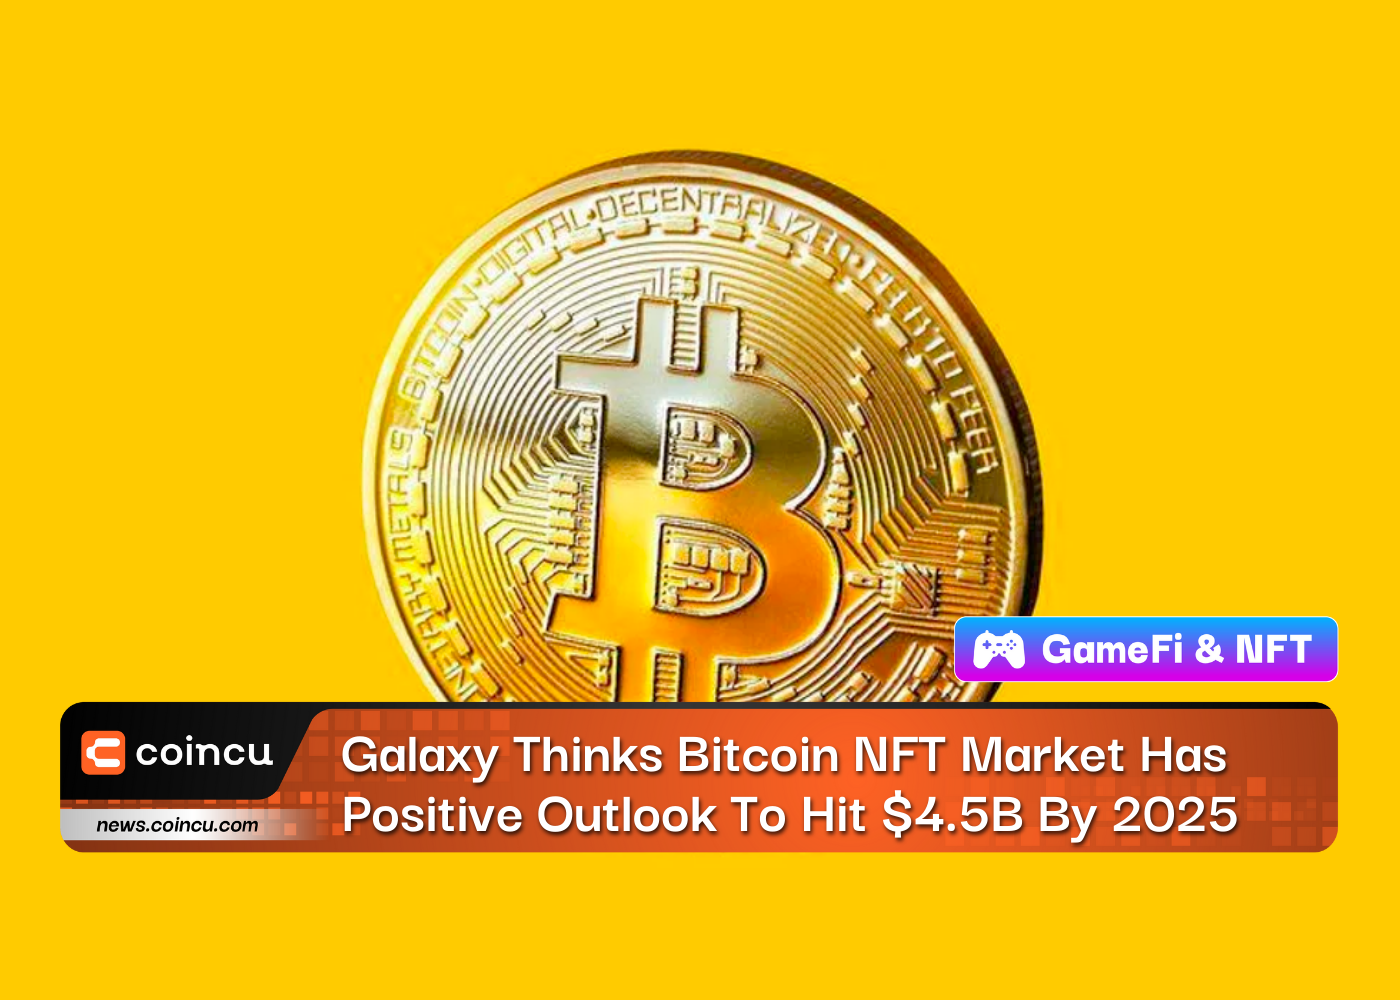 Galaxy считает, что рынок биткойнов NFT имеет положительный прогноз и достигнет 4.5 миллиардов долларов к 2025 году